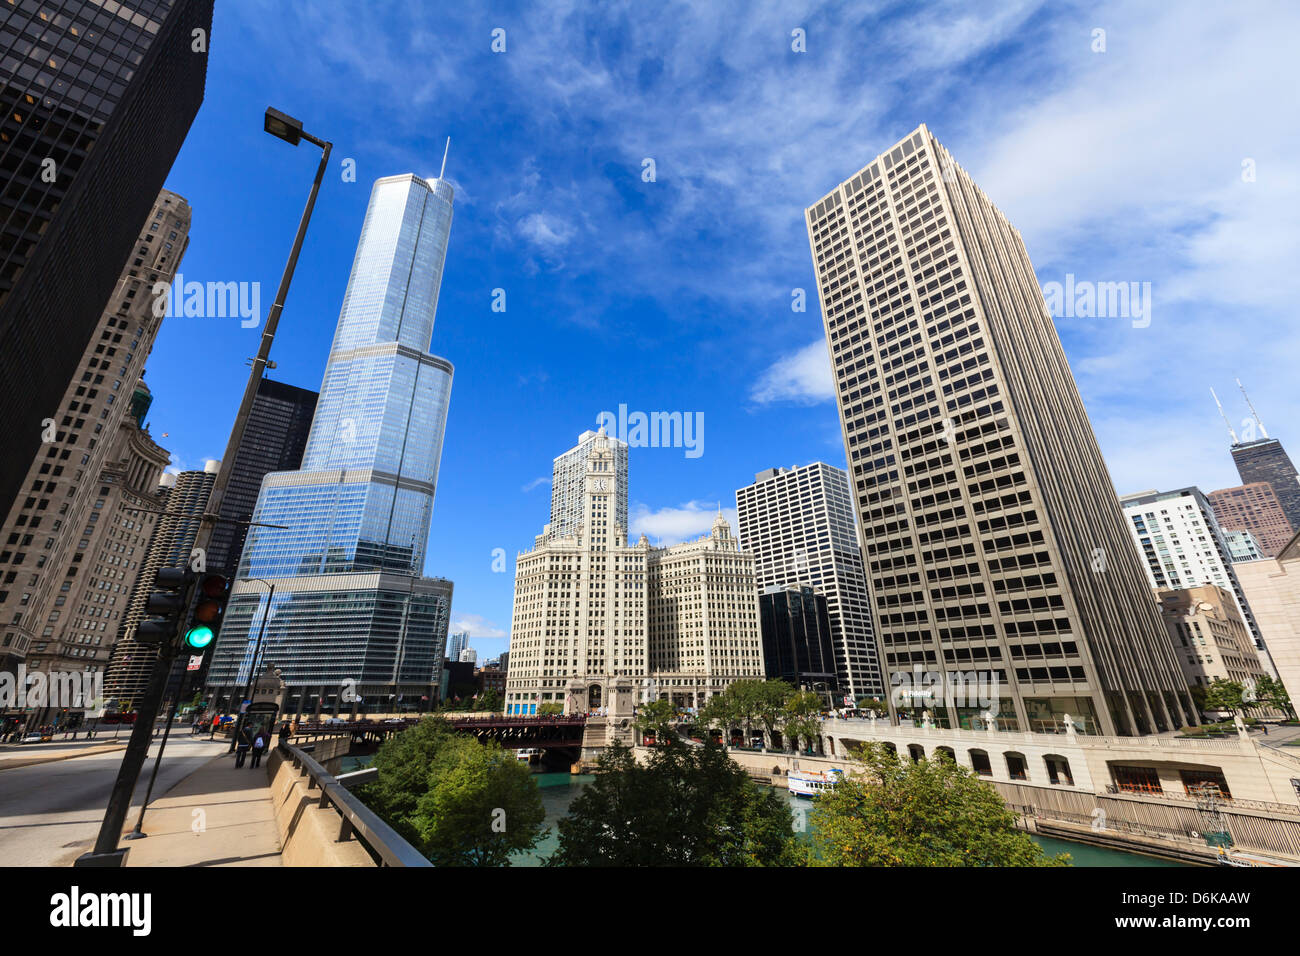 Chicago River mit Blick auf den Trump Tower und das Wrigley Building, Chicago, Illinois, Vereinigte Staaten von Amerika, Nordamerika Stockfoto